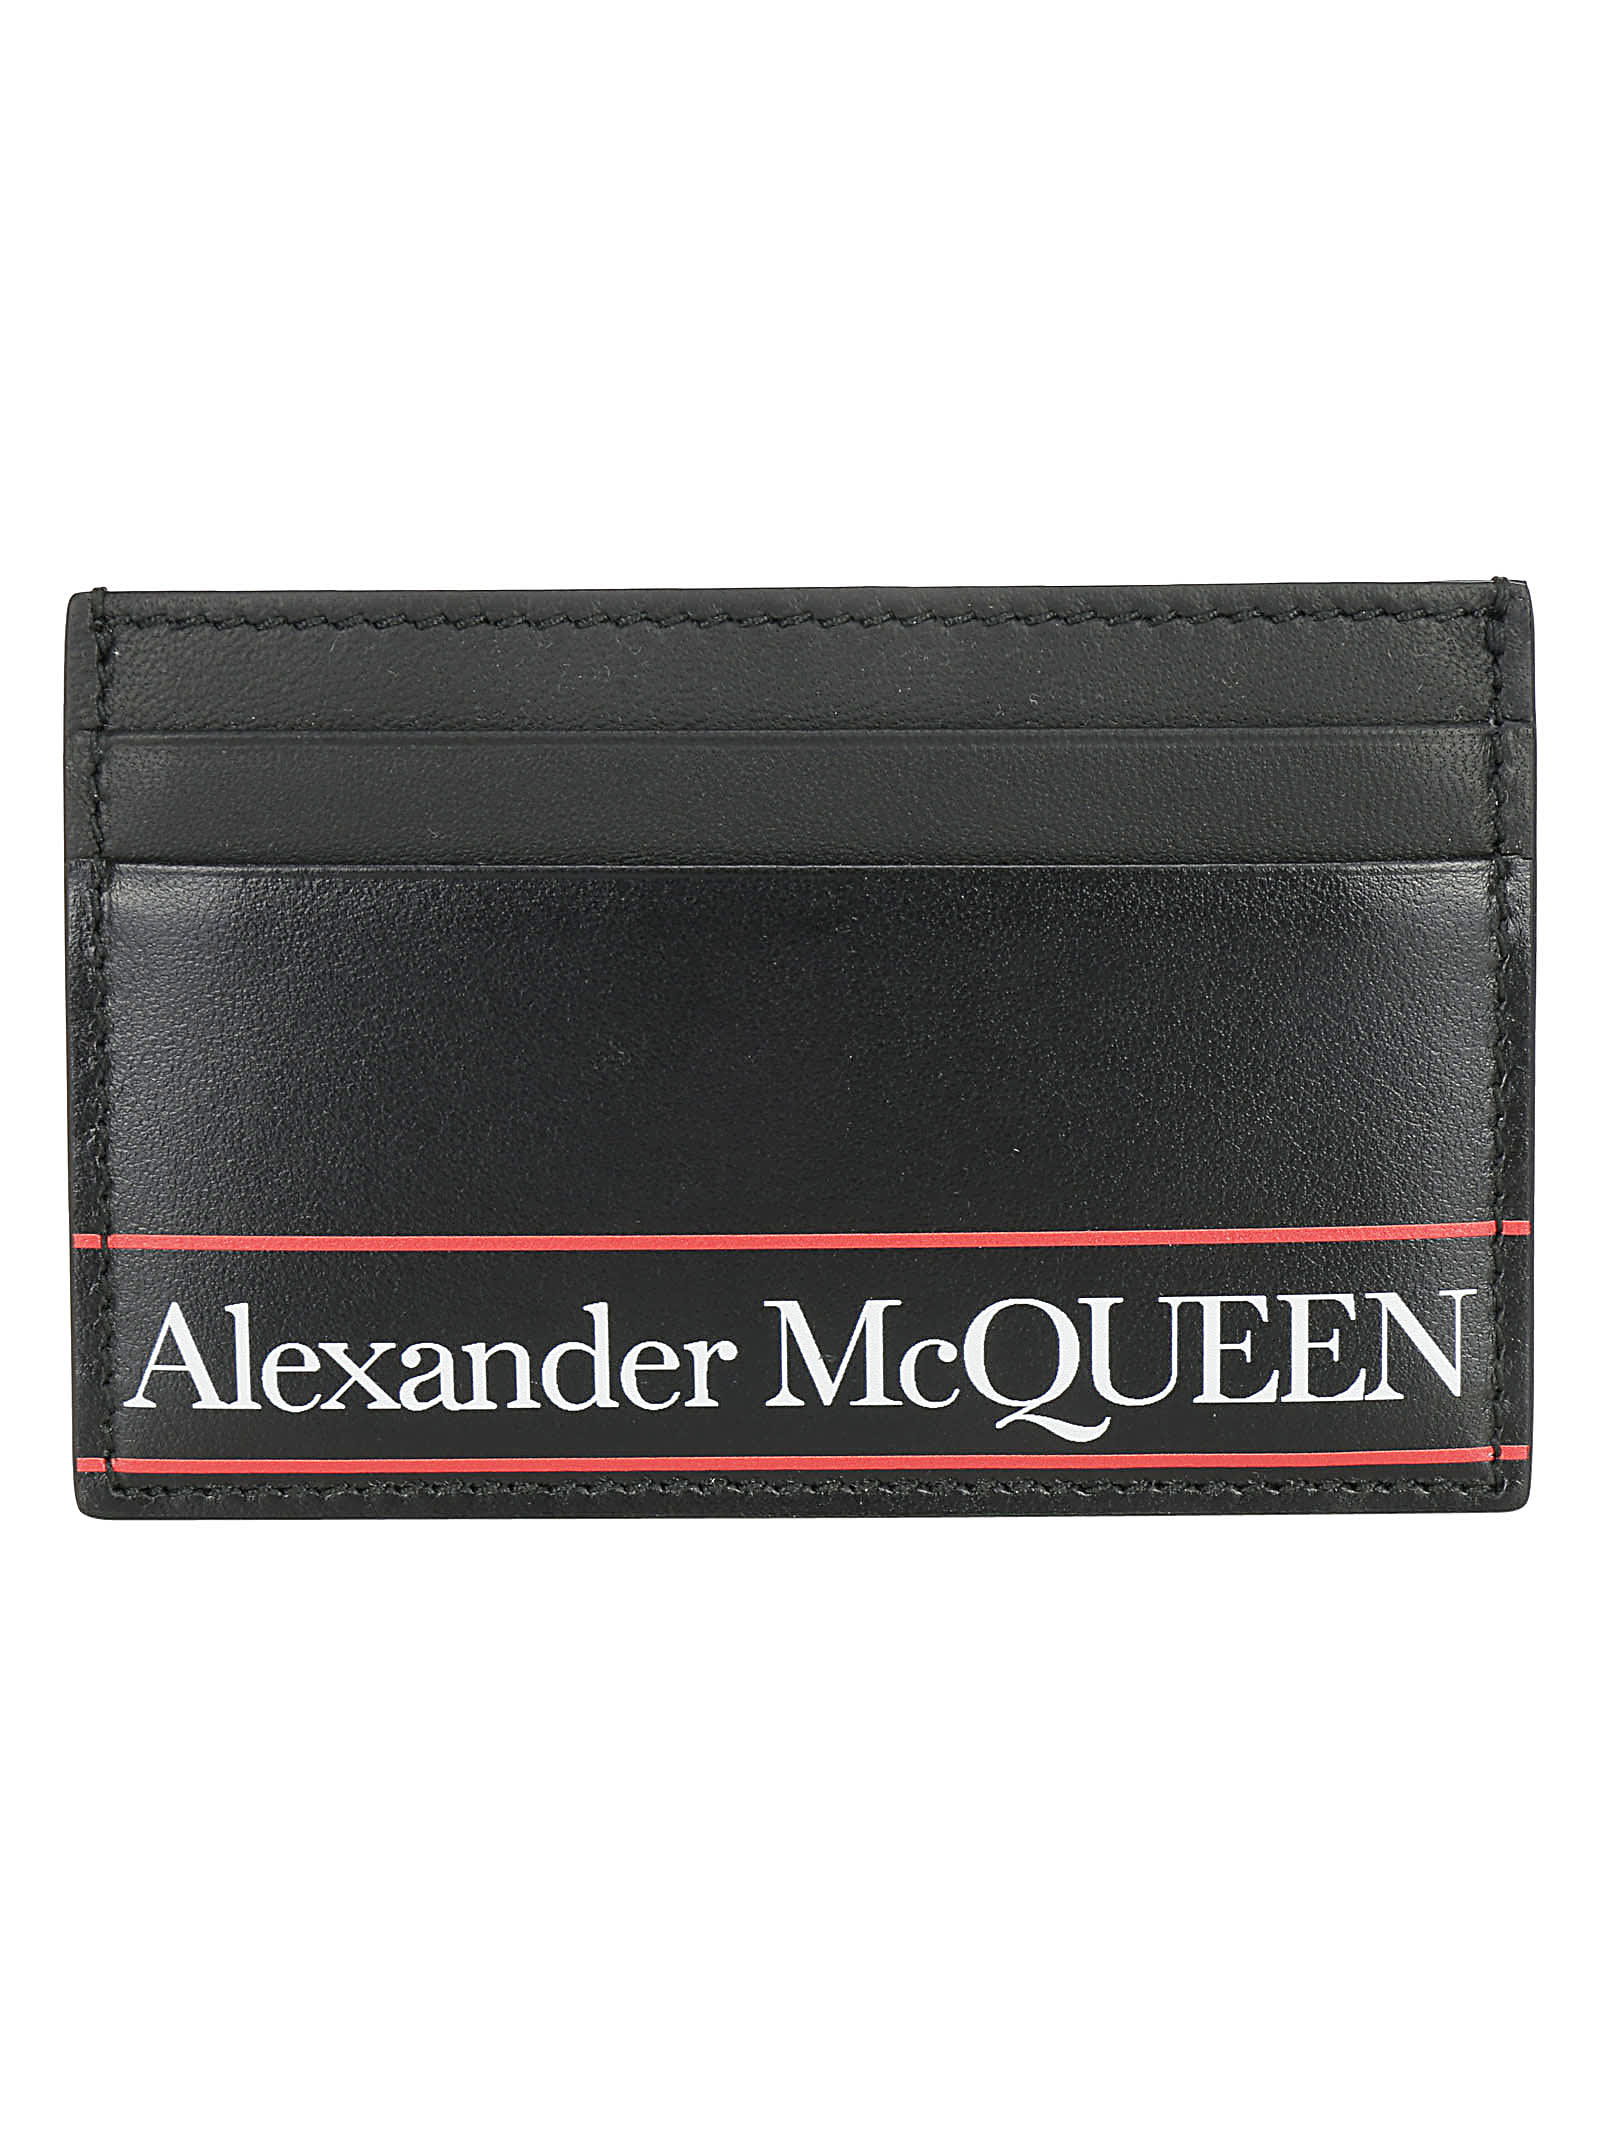 Alexander McQueen Wallets | italist 